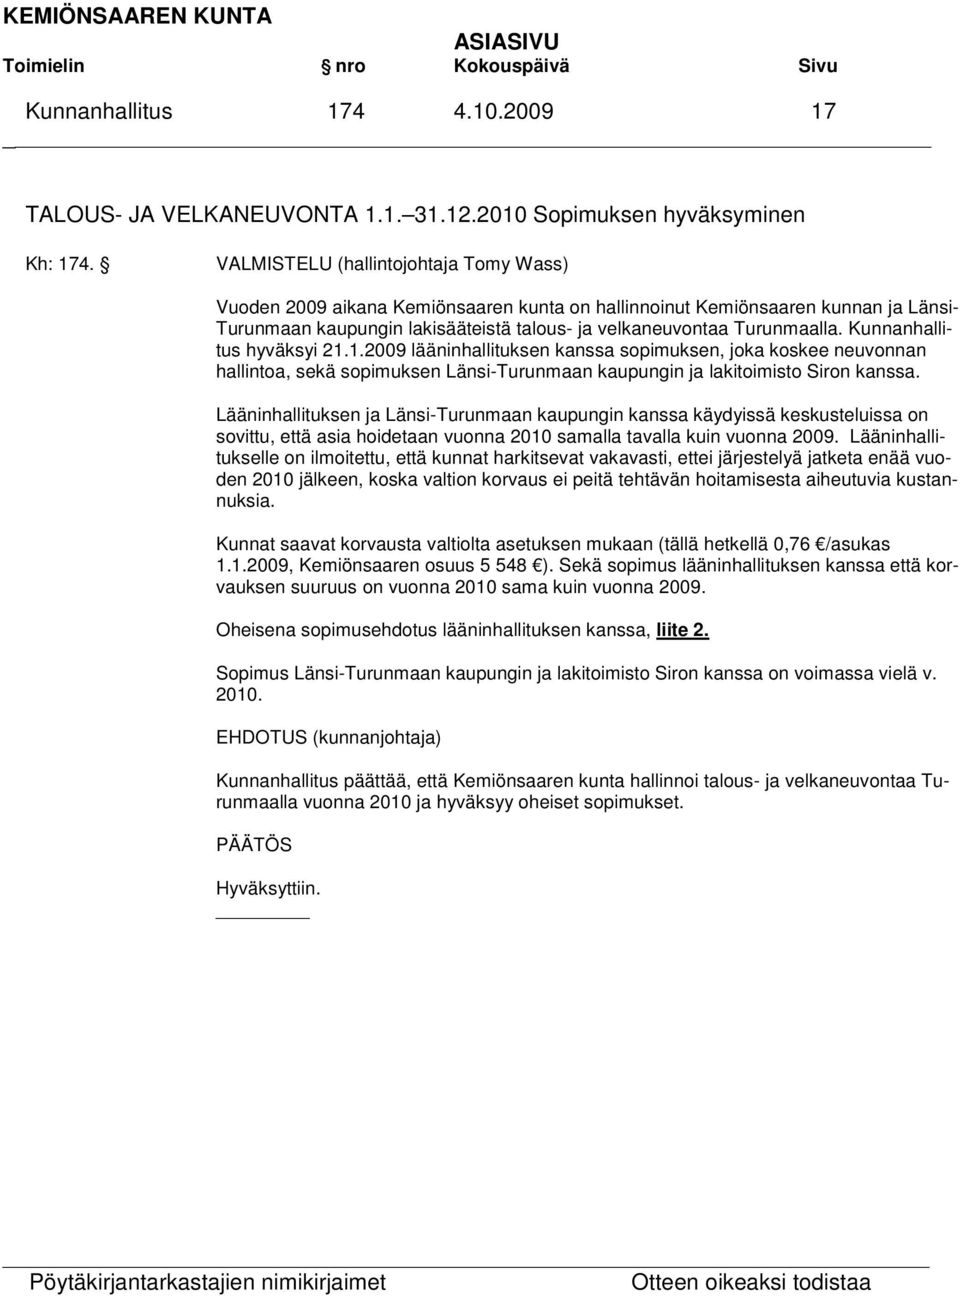 Kunnanhallitus hyväksyi 21.1.2009 lääninhallituksen kanssa sopimuksen, joka koskee neuvonnan hallintoa, sekä sopimuksen Länsi-Turunmaan kaupungin ja lakitoimisto Siron kanssa.